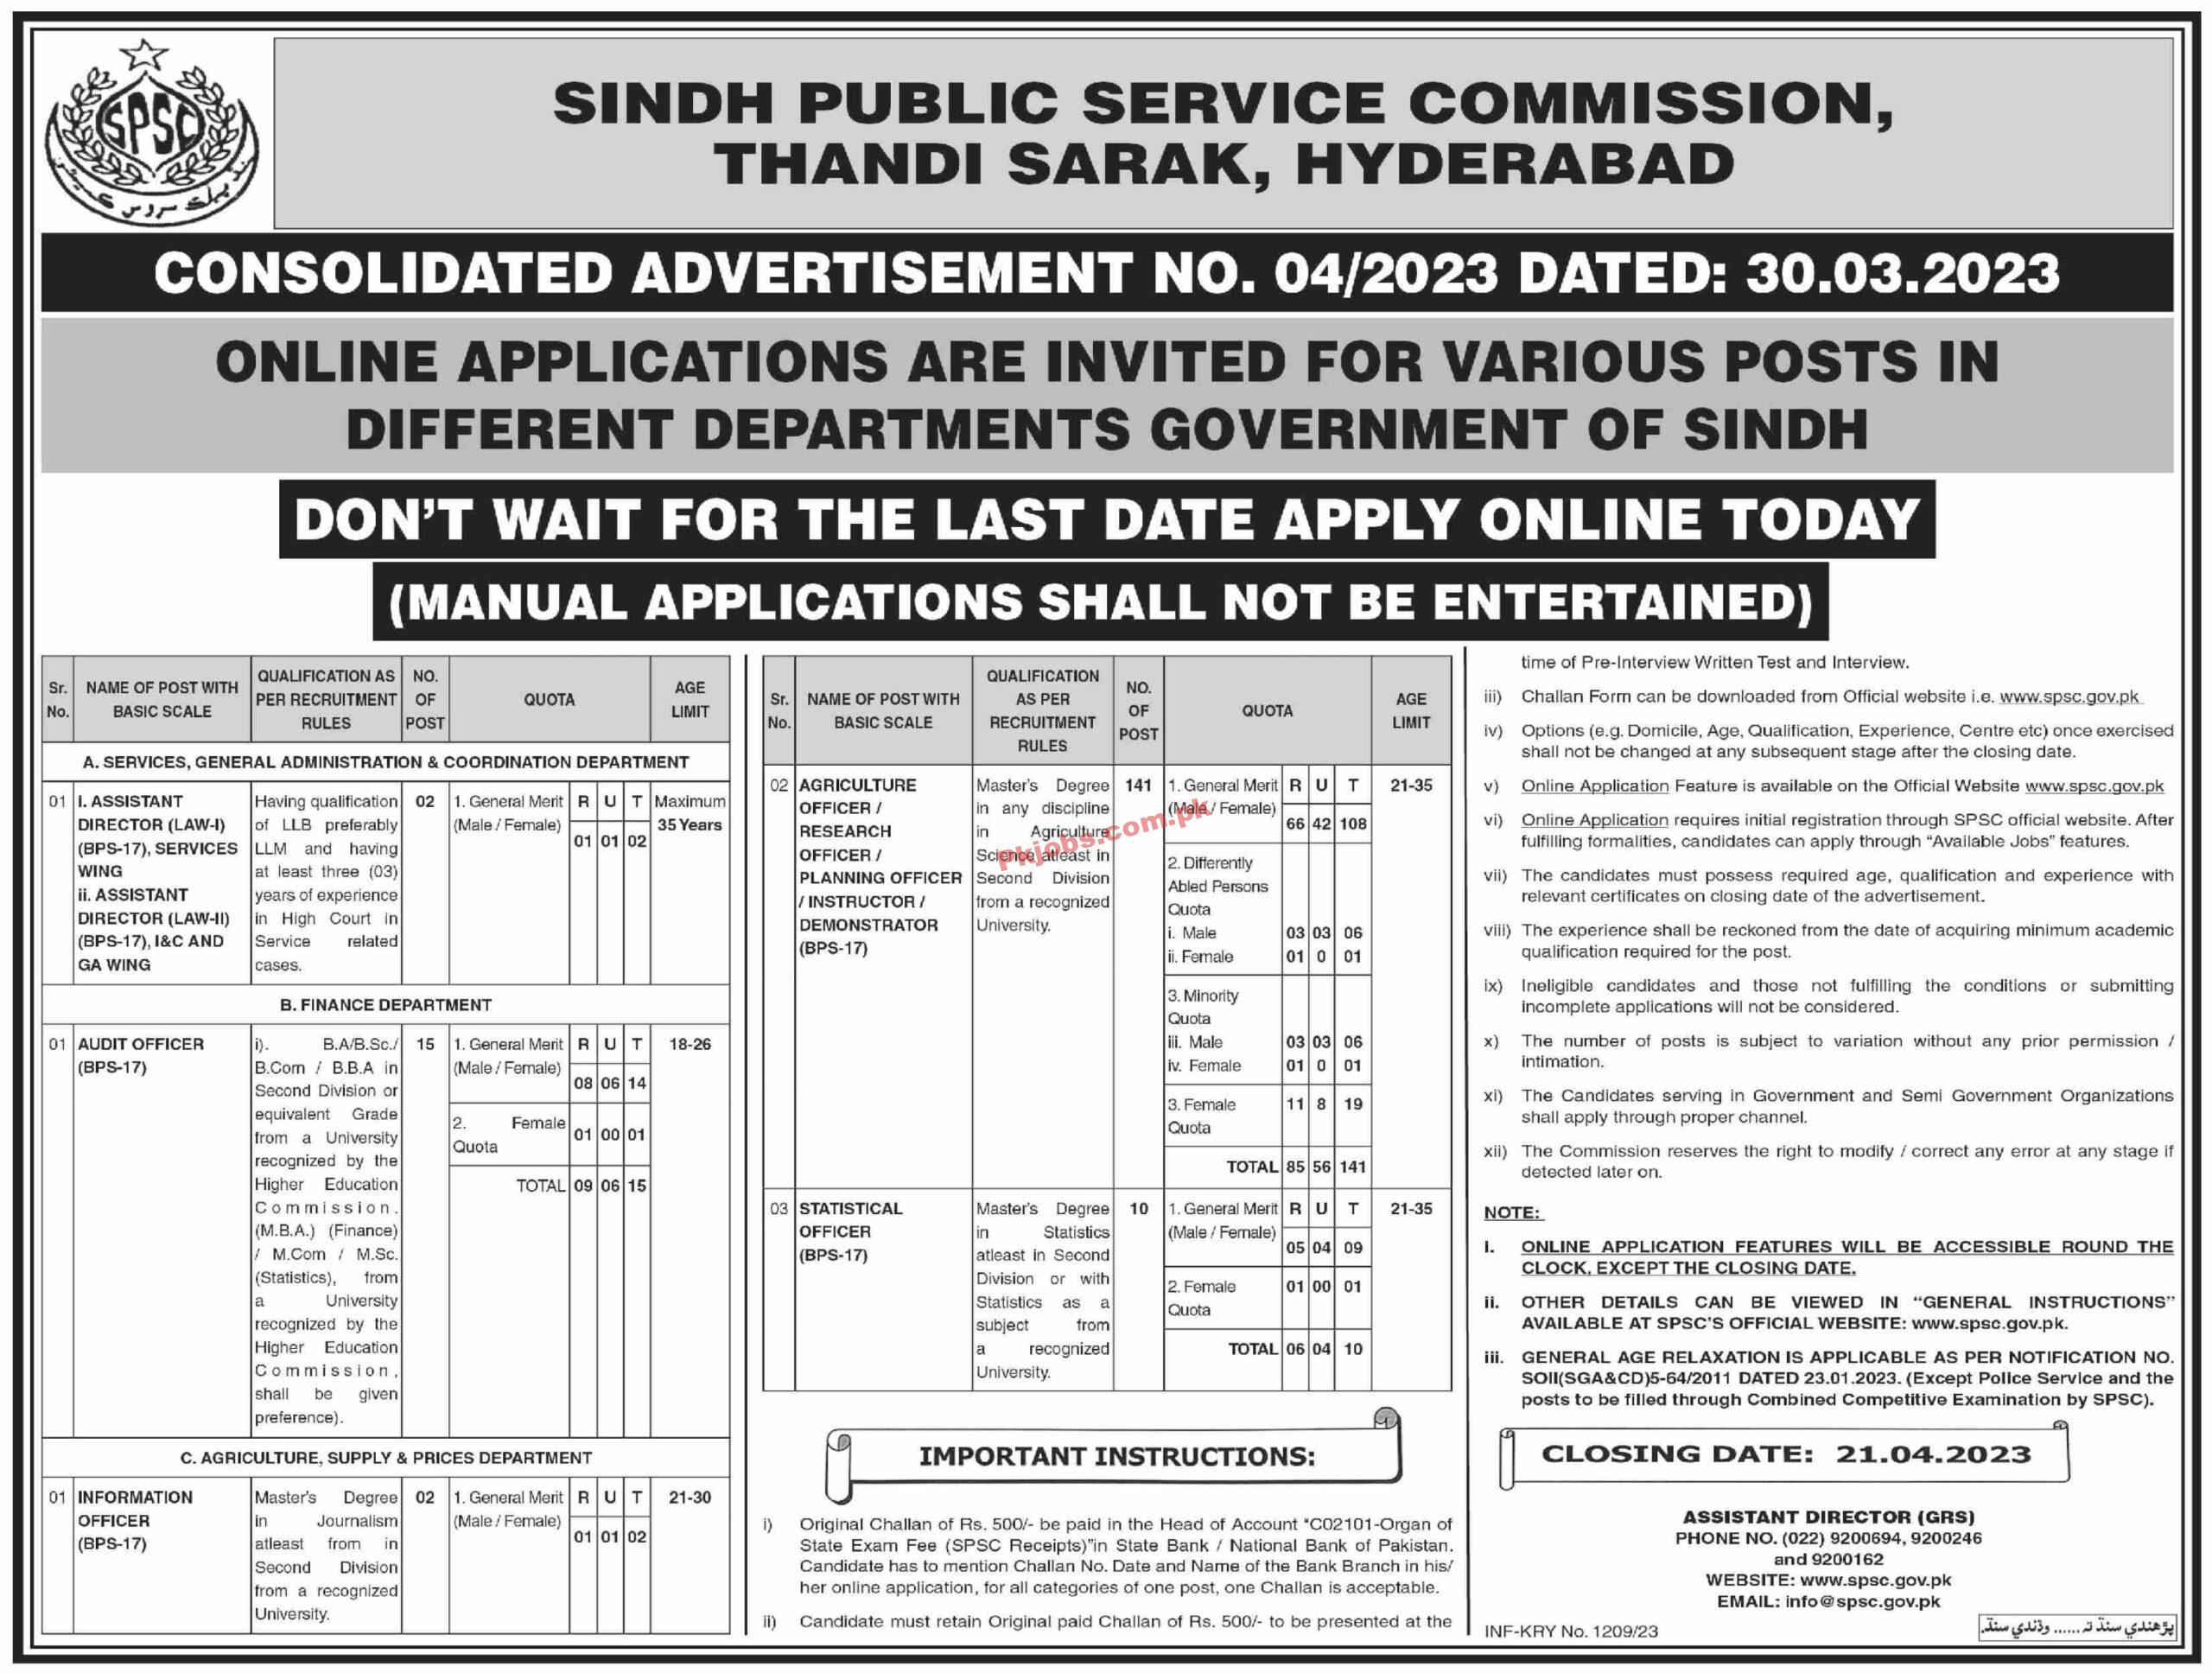 Latest SPSC Sindh Public Service Commission Recruitments Jobs 2023